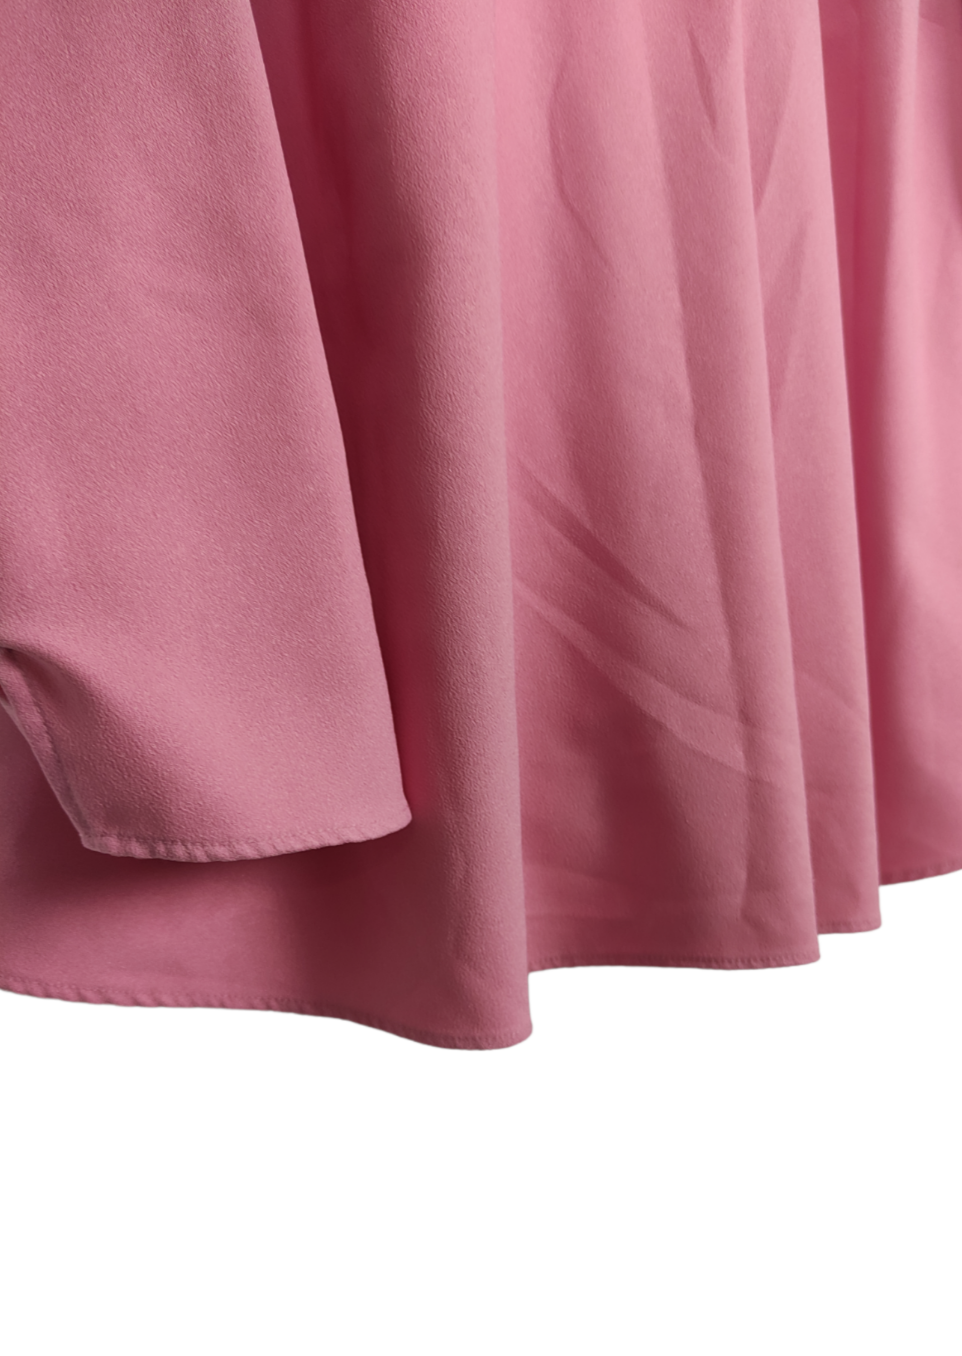 Γυναικεία Μπλούζα M&S σε Παλ Ροζ χρώμα (Large)